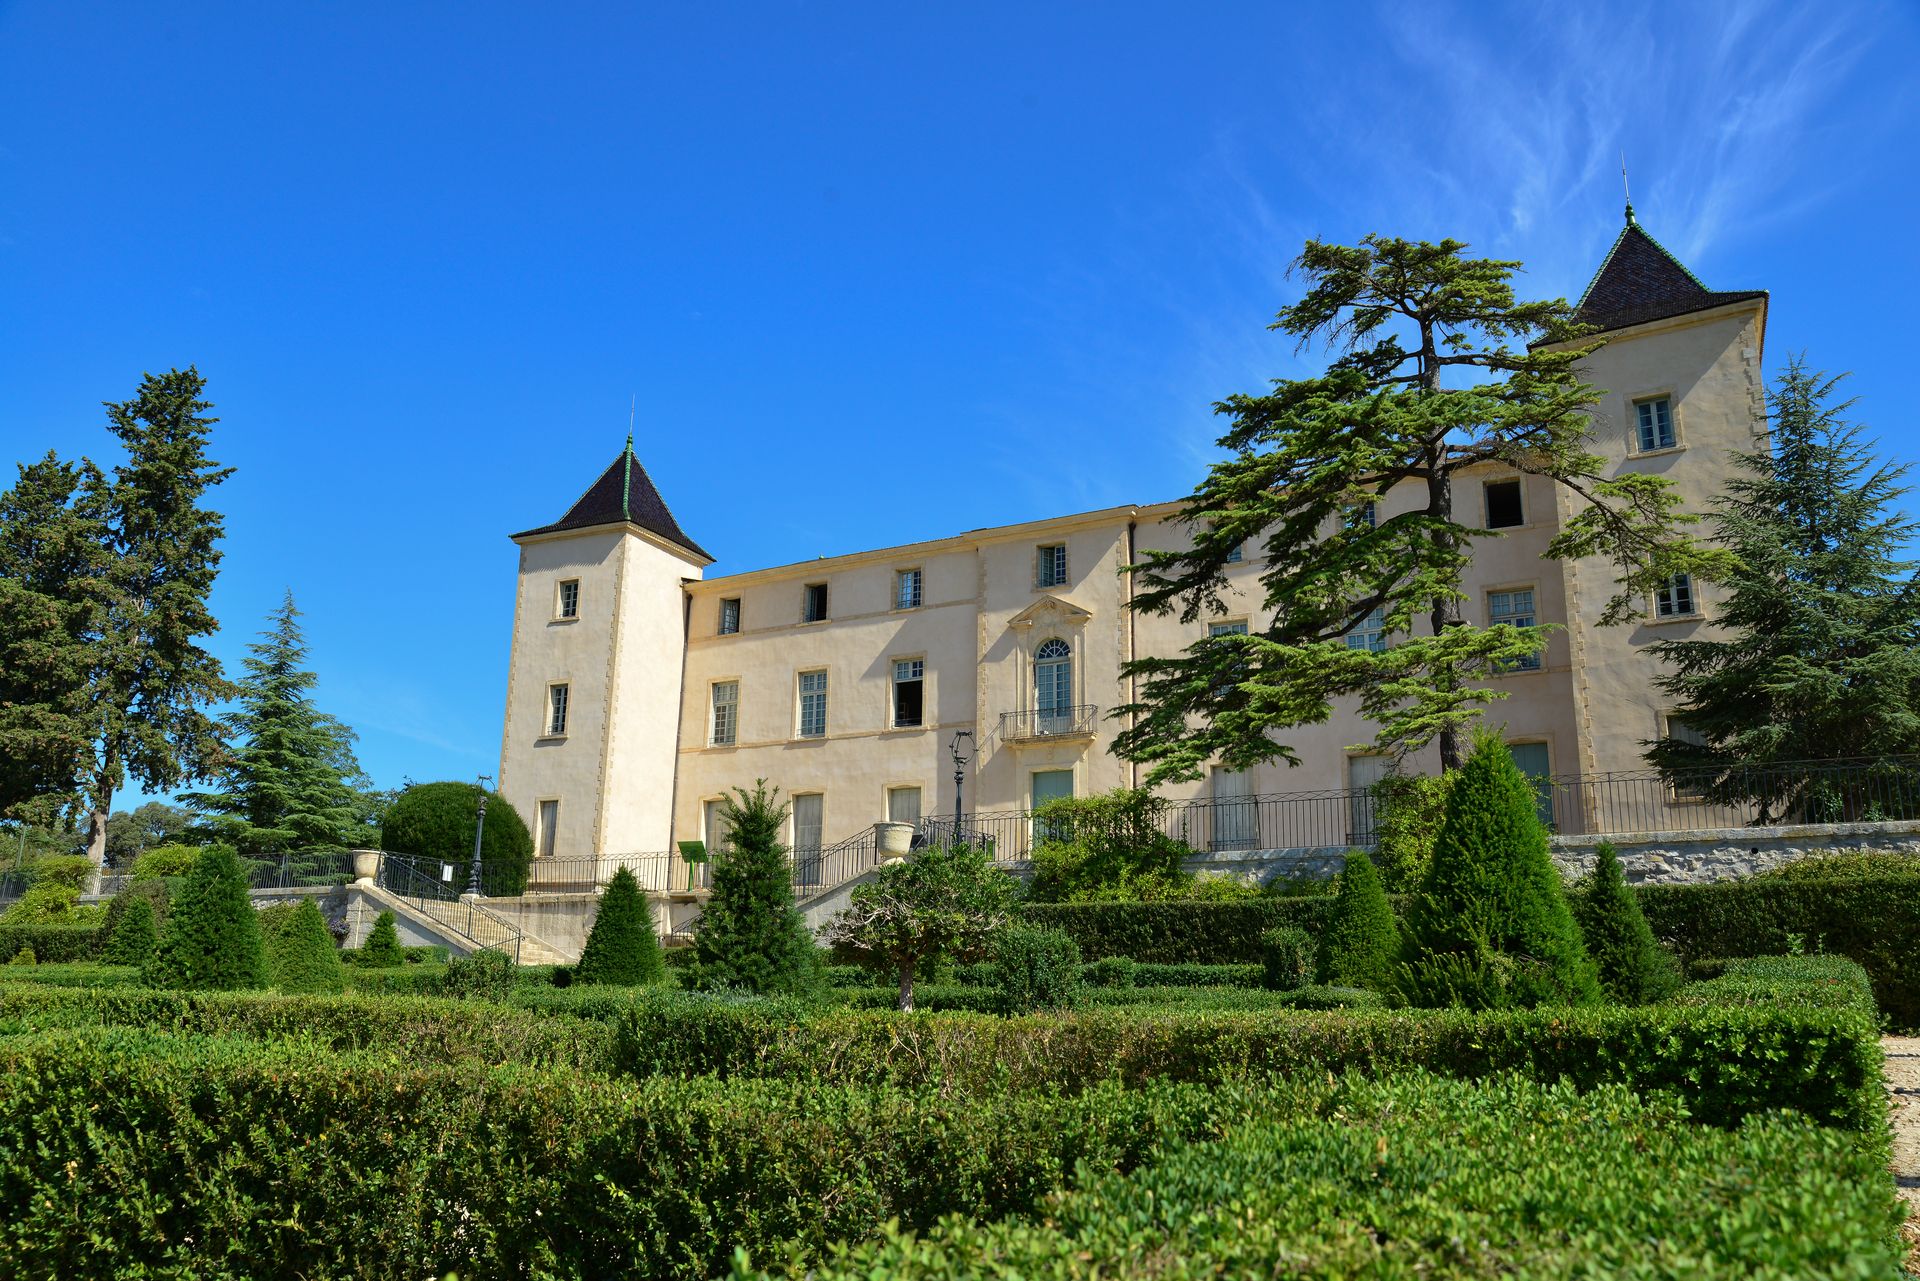 Château de Restinclières et ses jardins à la française